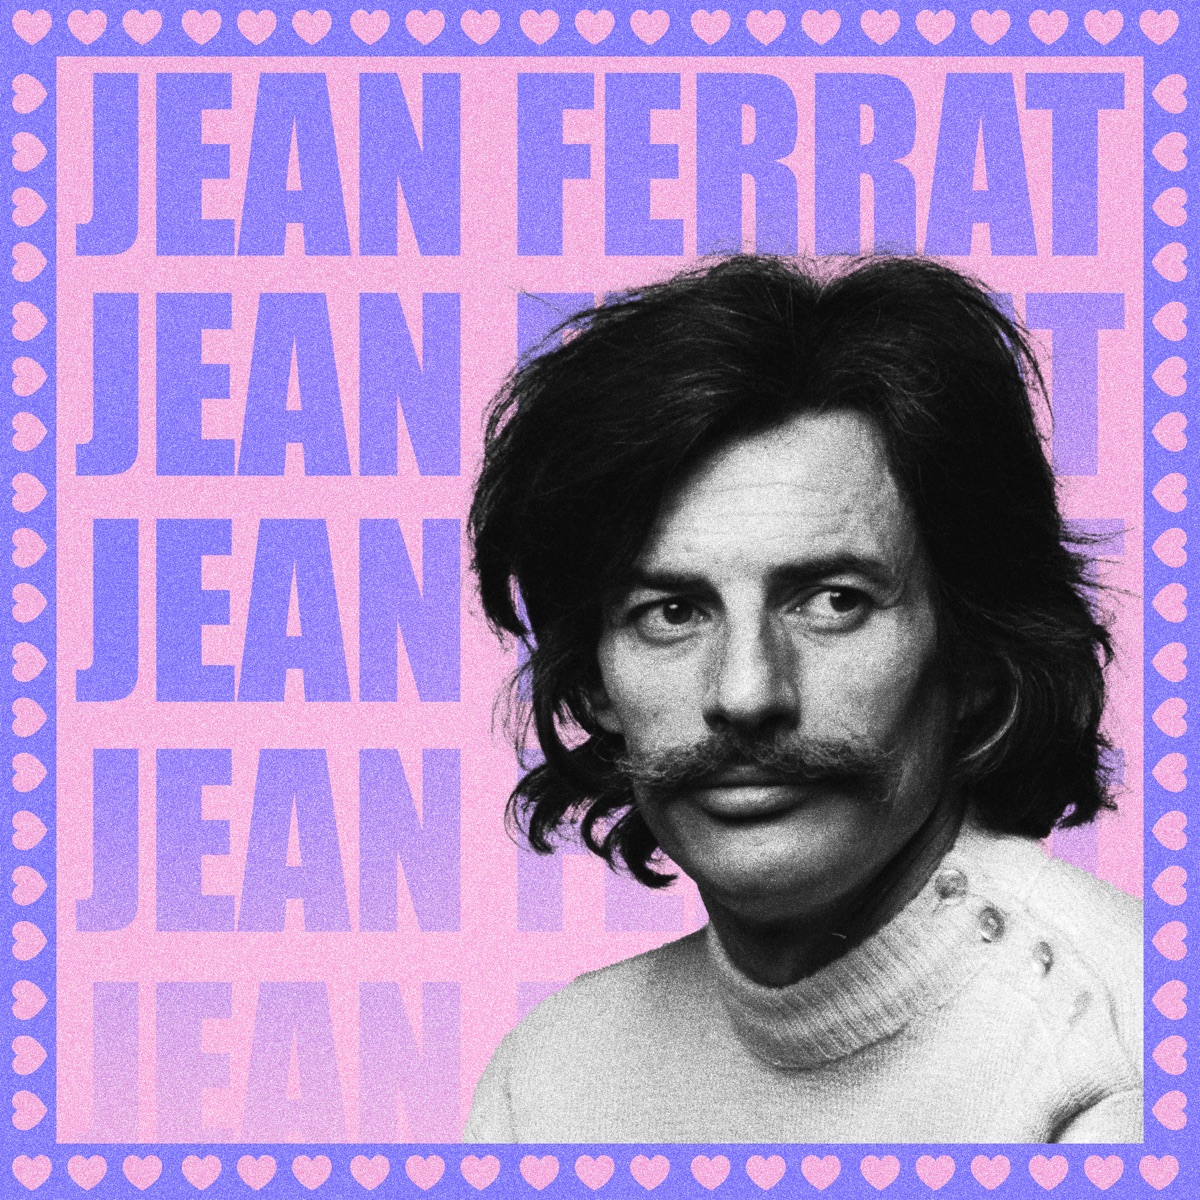 L'intégrale Temey : 195 chansons by Jean Ferrat on Apple Music